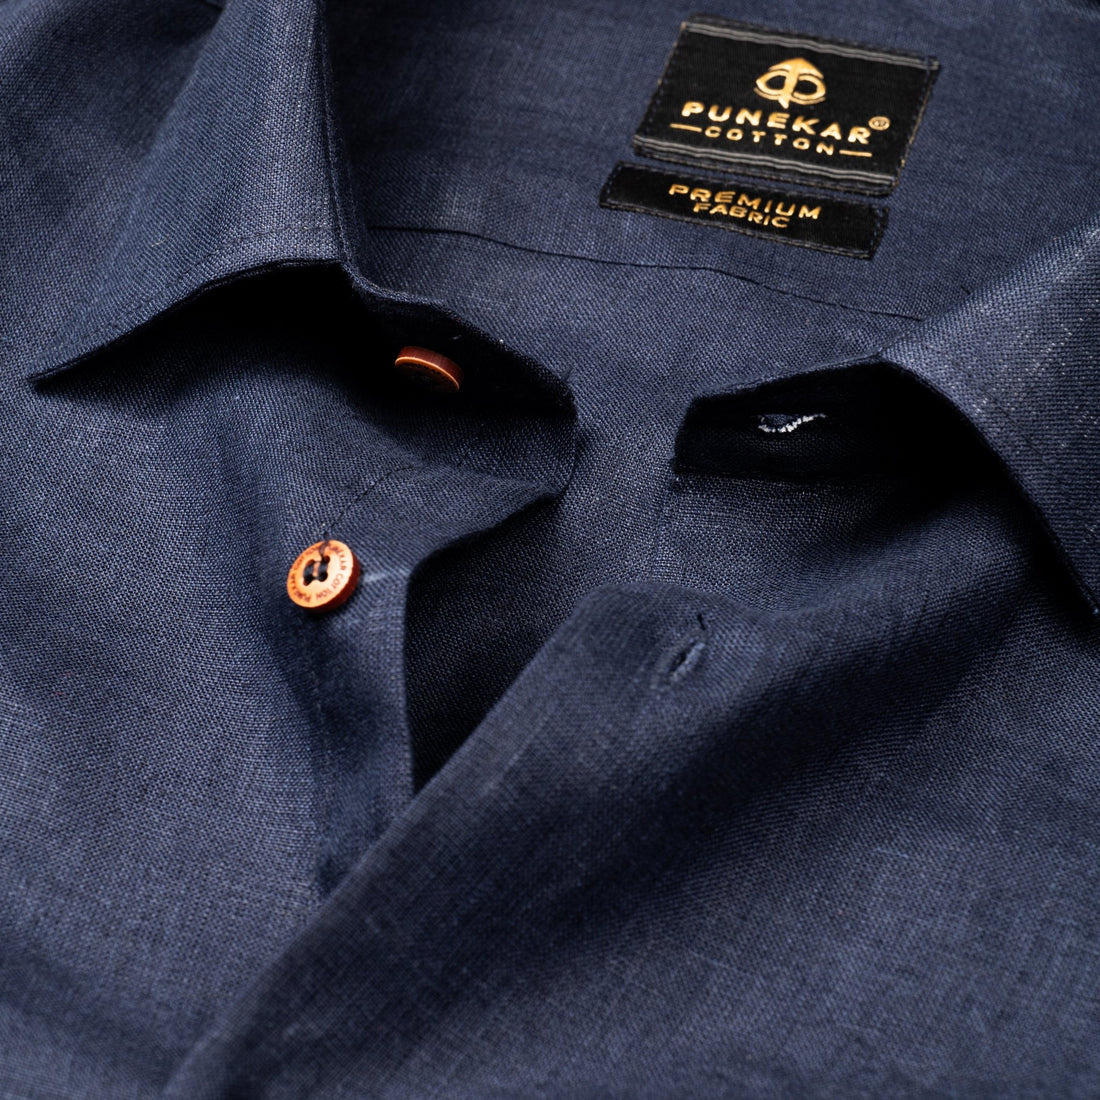 Navy Blue Color Prime Linen Shirt For Men - Punekar Cotton